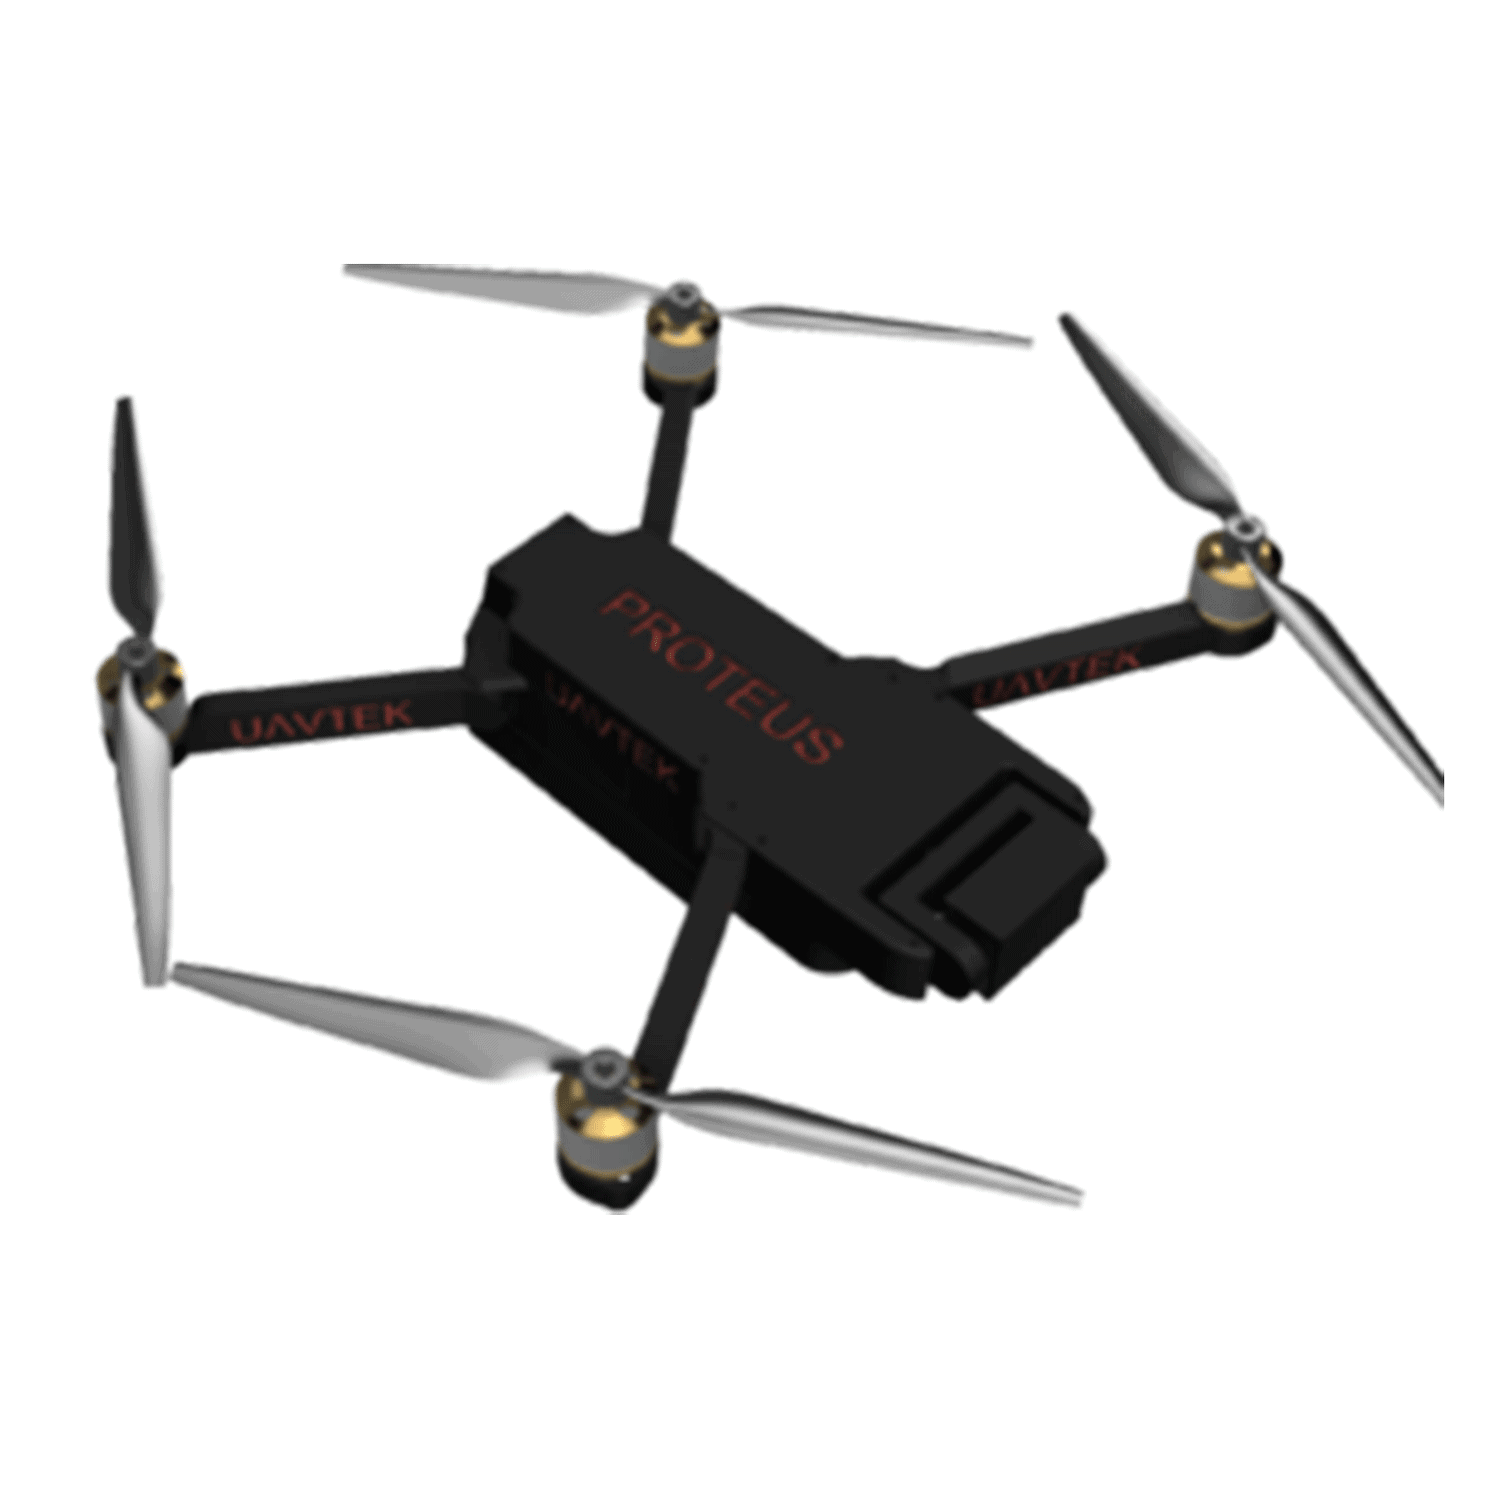 Quadcopter Transparent Image